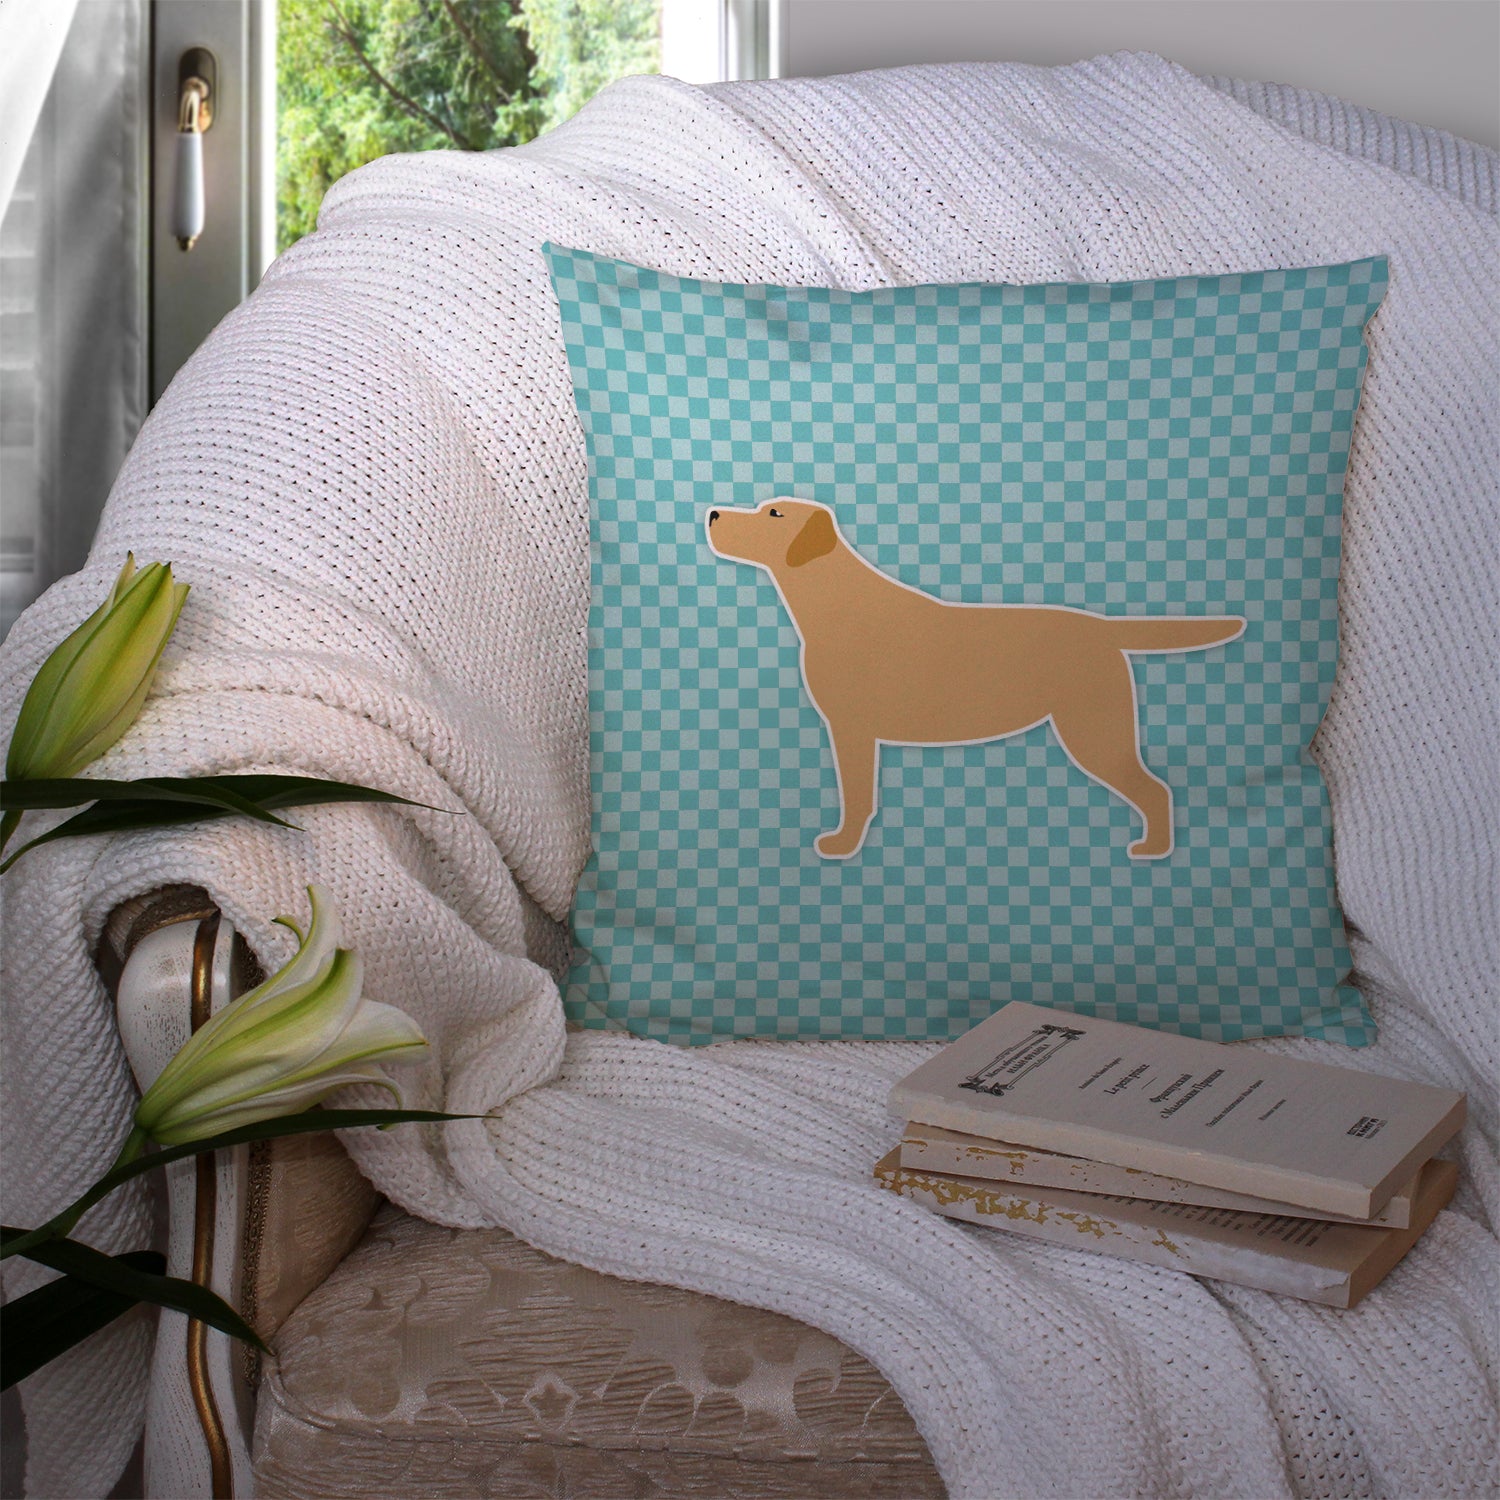 Yellow Labrador Retriever  Checkerboard Blue Fabric Decorative Pillow BB3697PW1414 - the-store.com